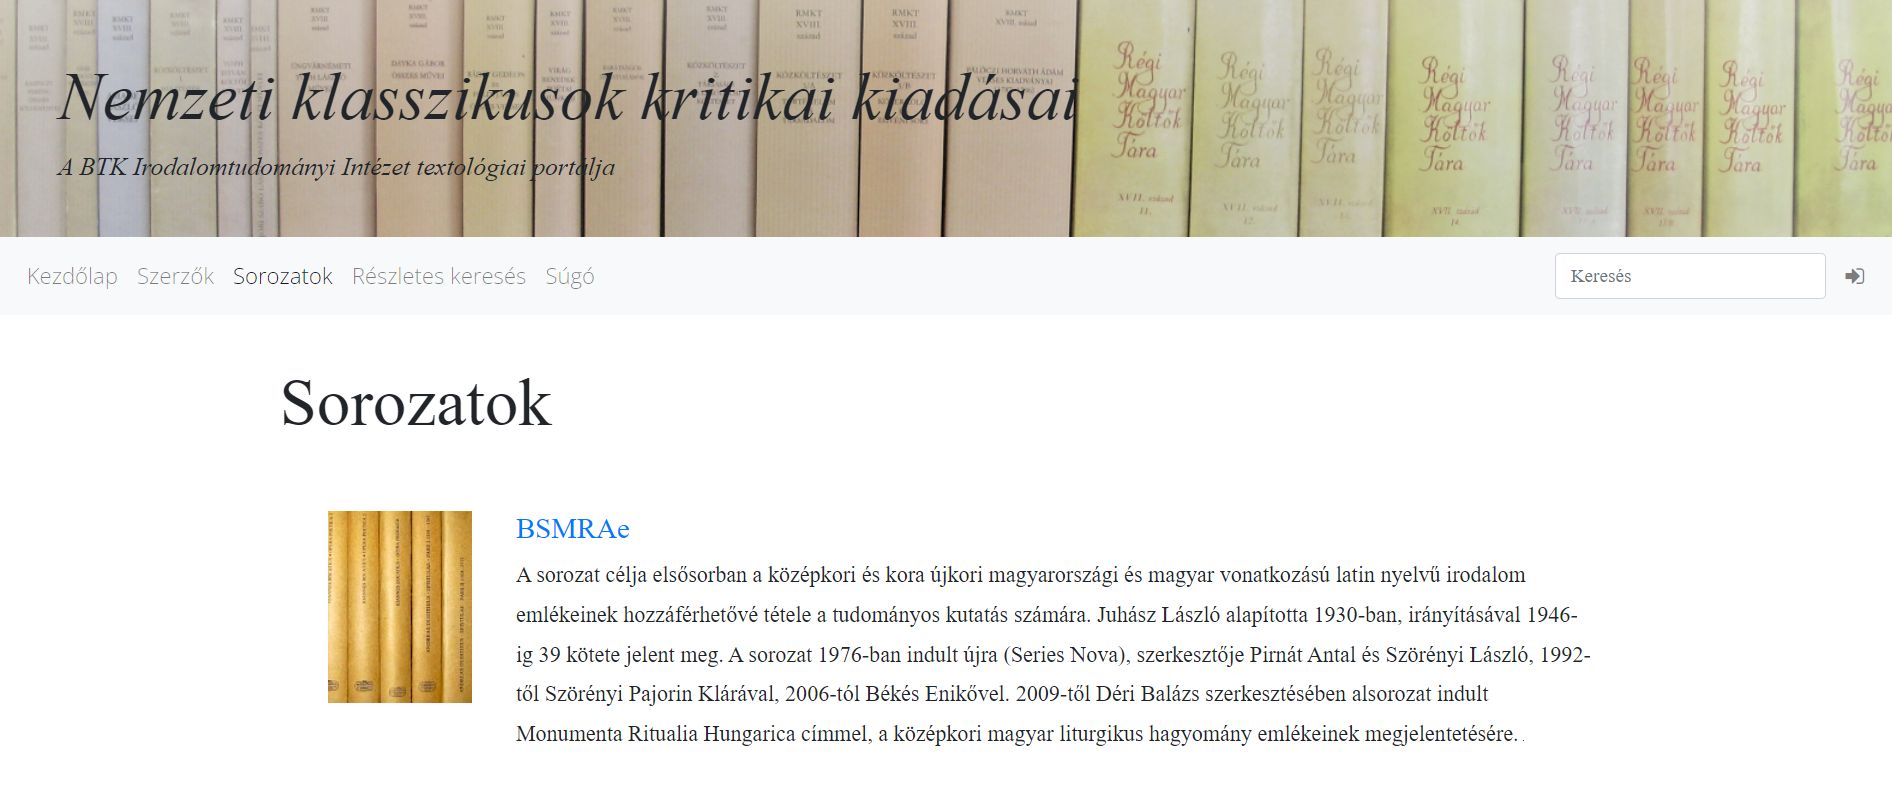 A magyarországi neolatin szövegkiadás könyvsorozata